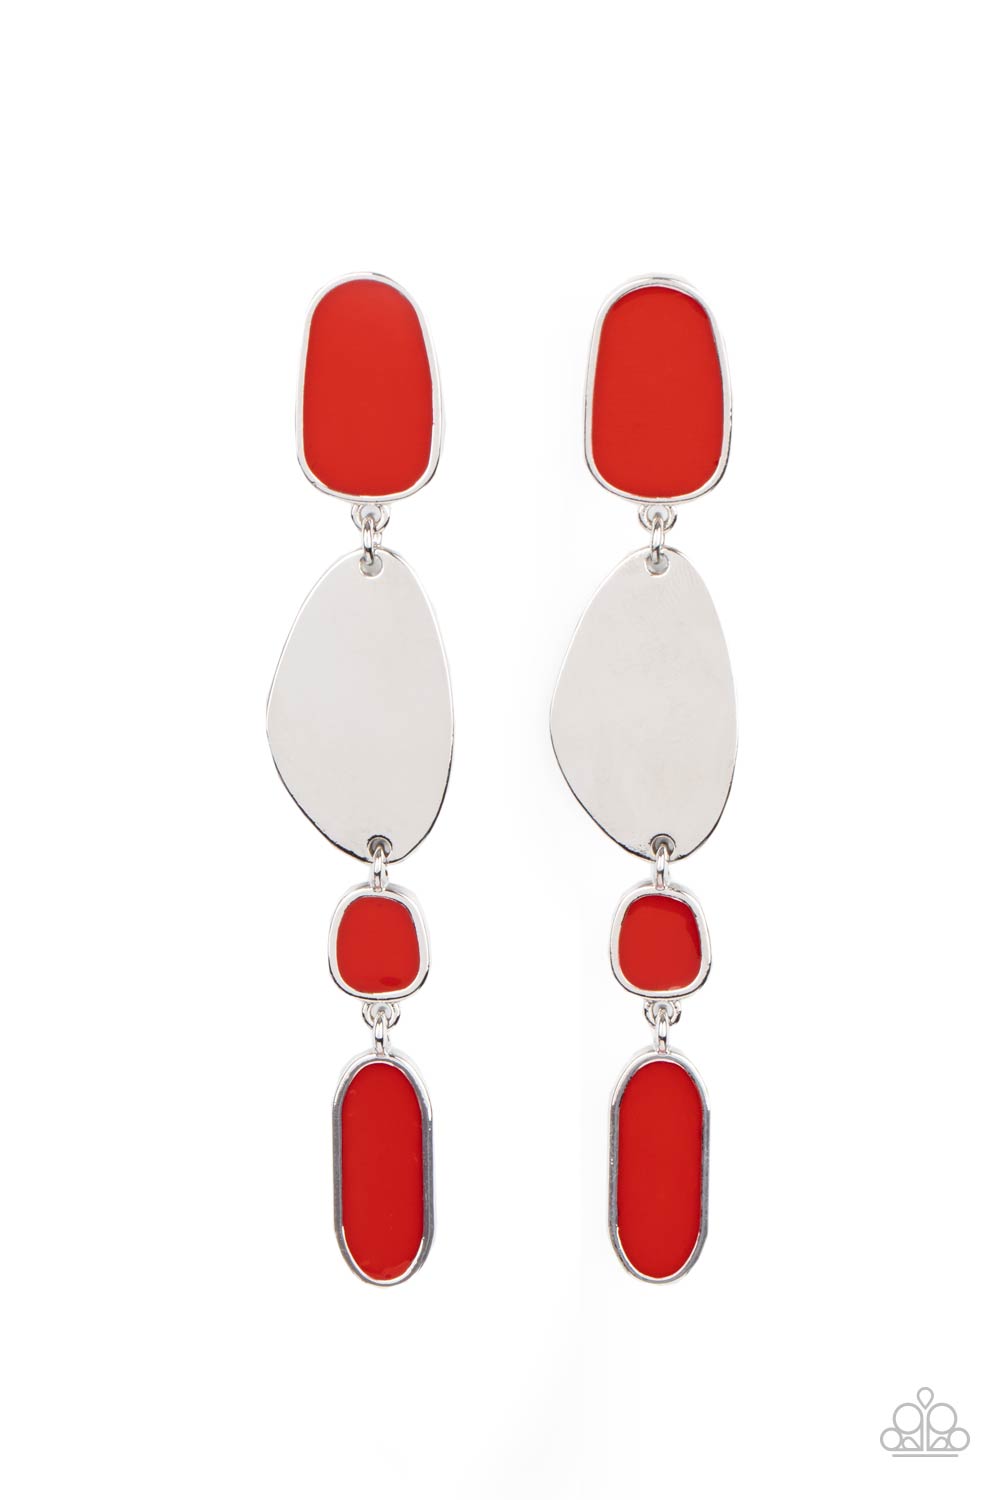 Deco By Design Red
Post Earrings - Daria's Blings N Things